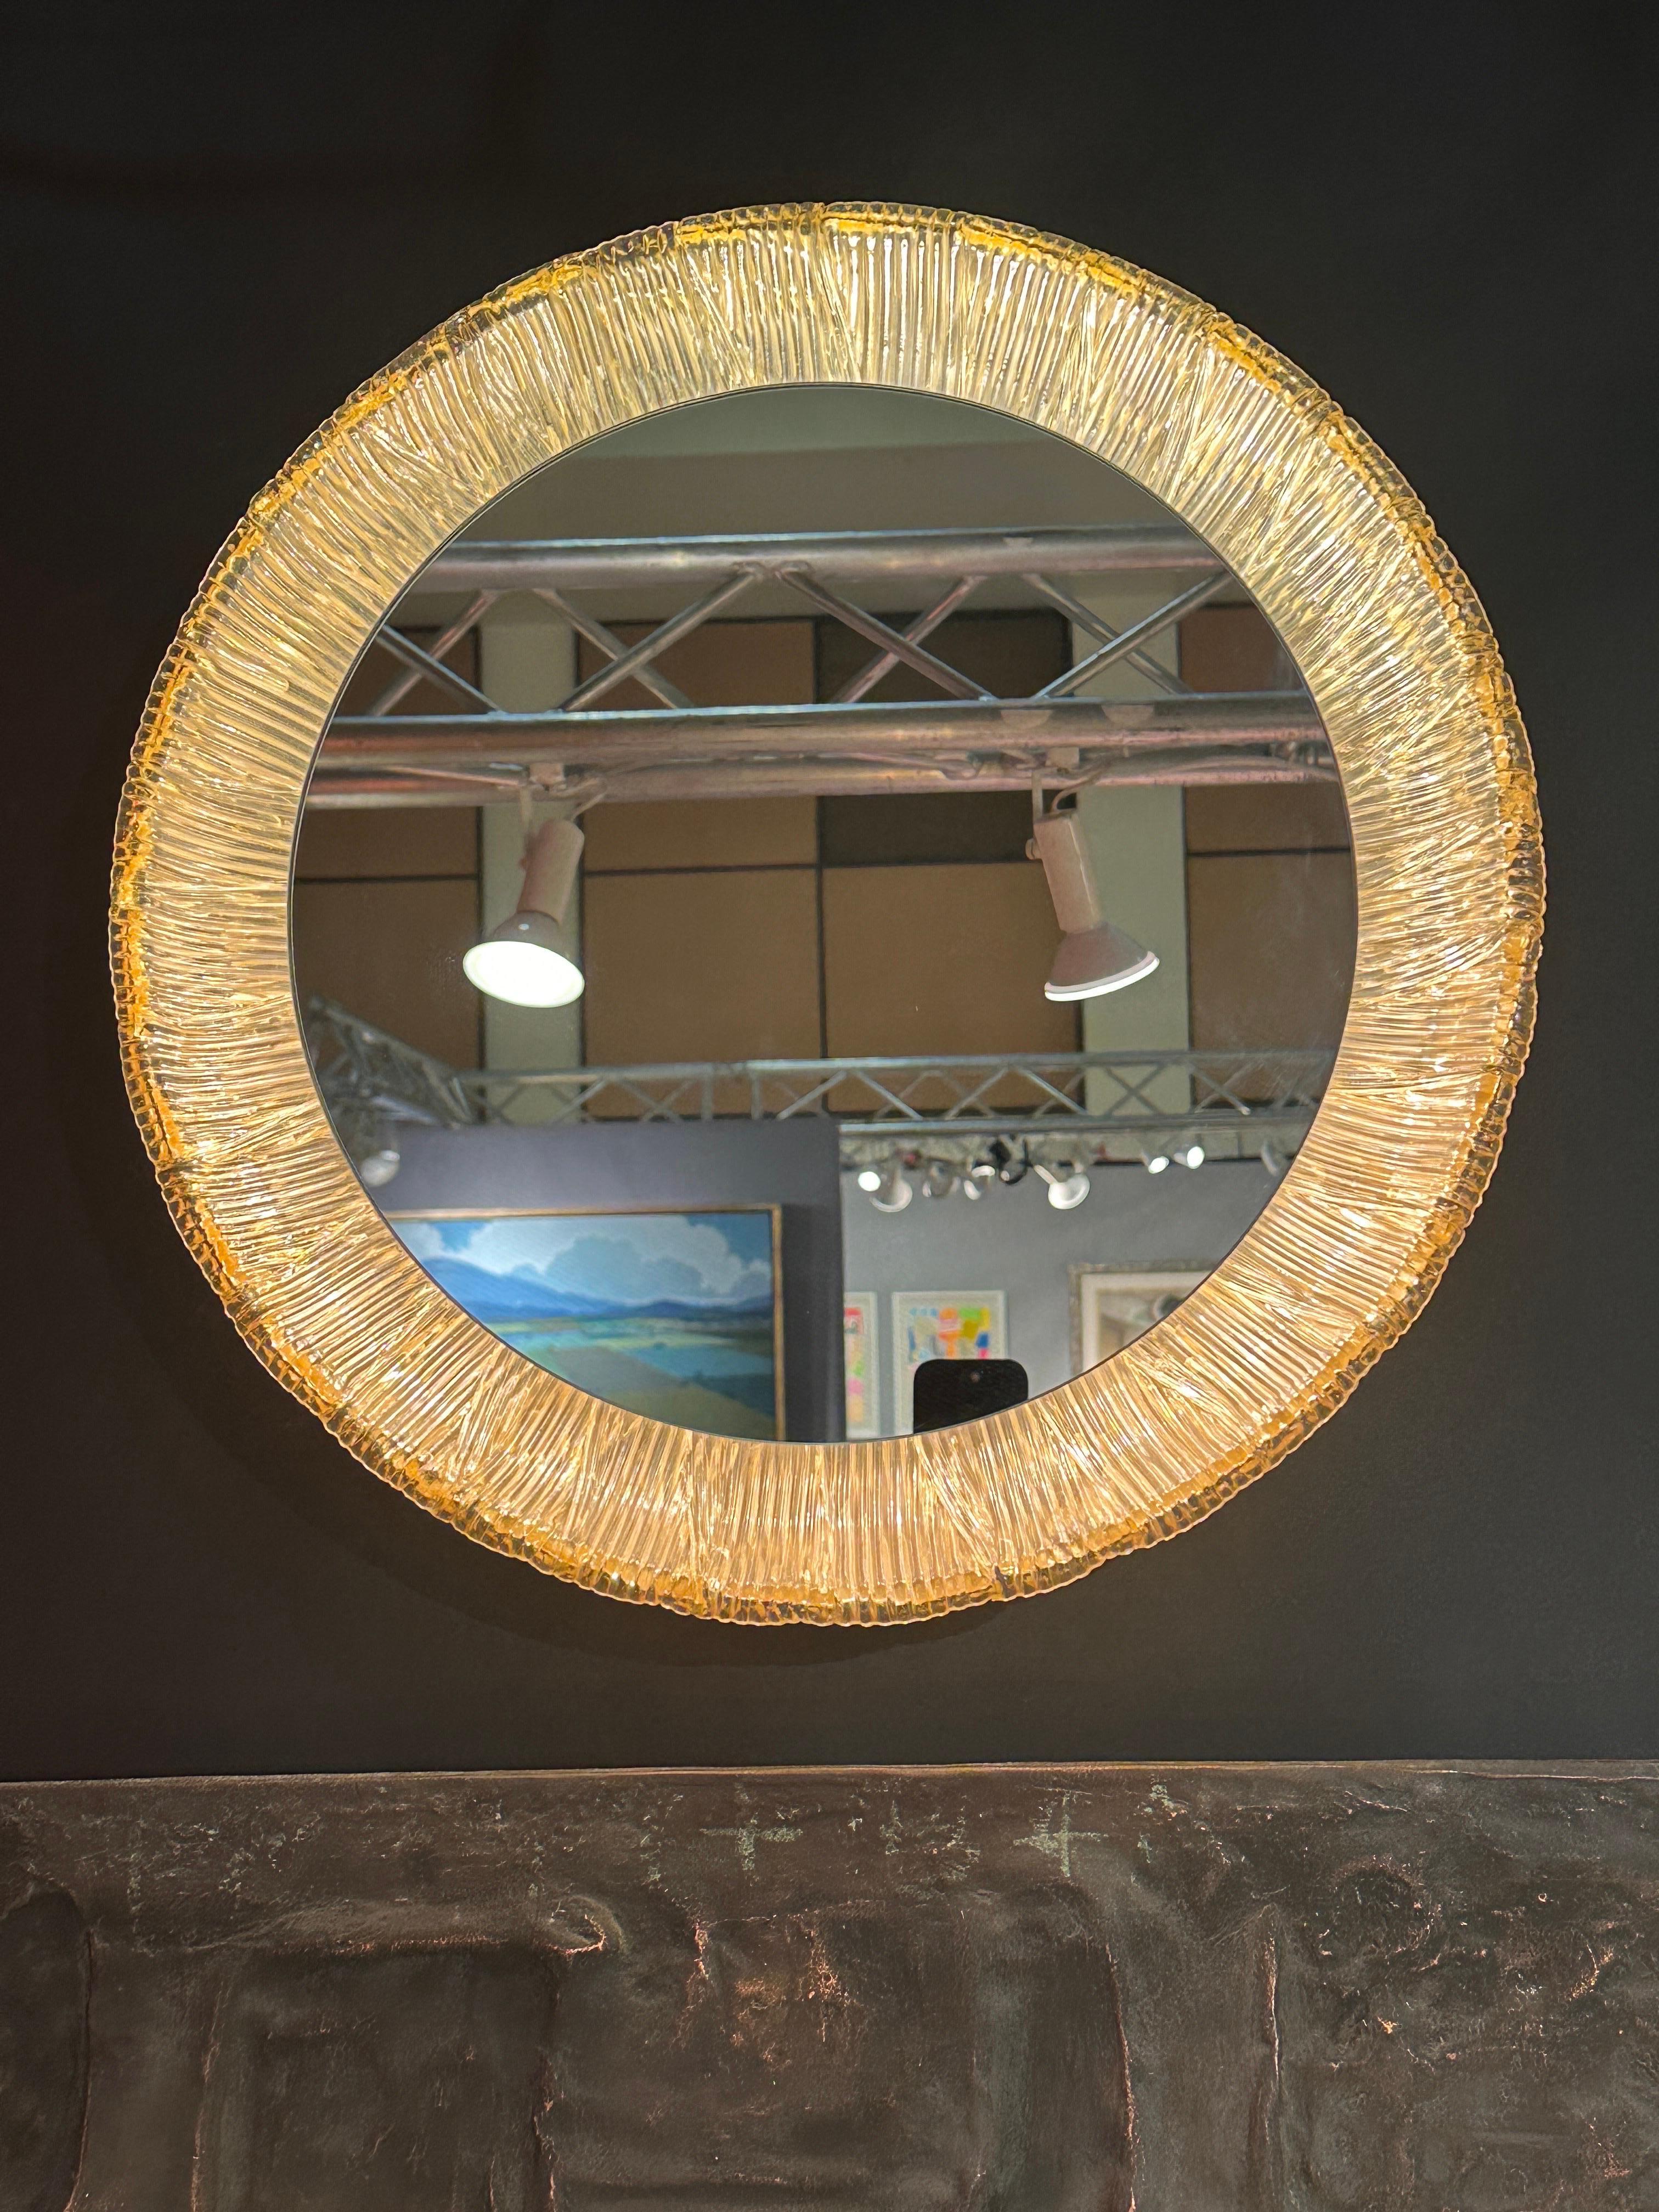 Miroir de courtoisie rétro-éclairé en acrylique fabriqué en Allemagne dans les années 1970
Seul le miroir a un diamètre de 14